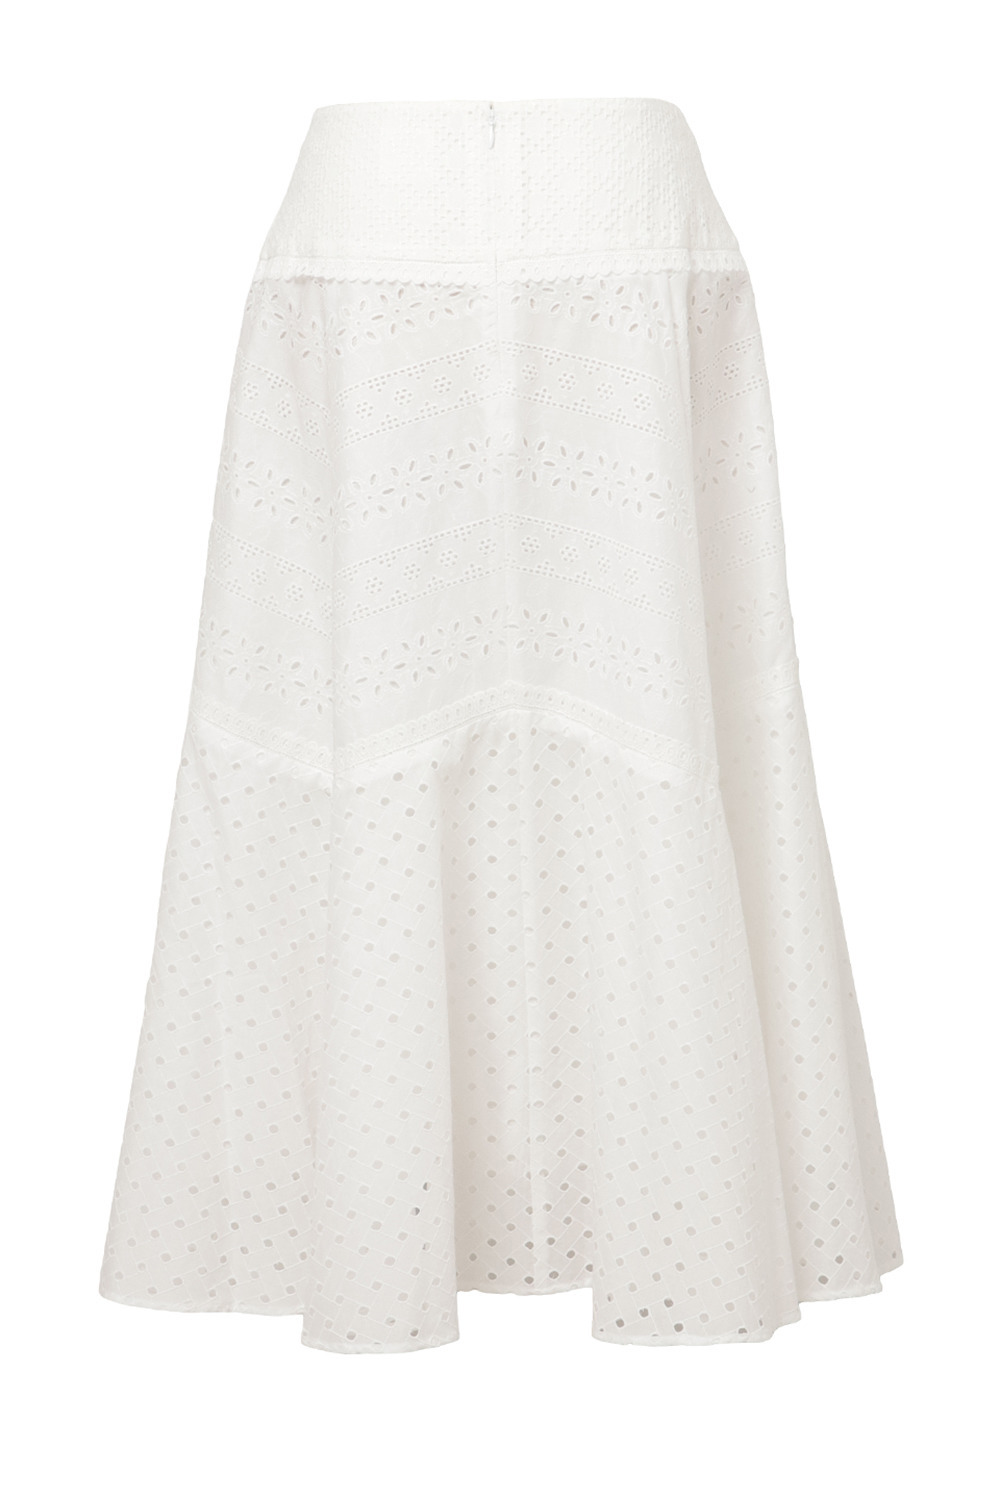 Cotton Lace Patchwork スカート 詳細画像 ホワイト 2